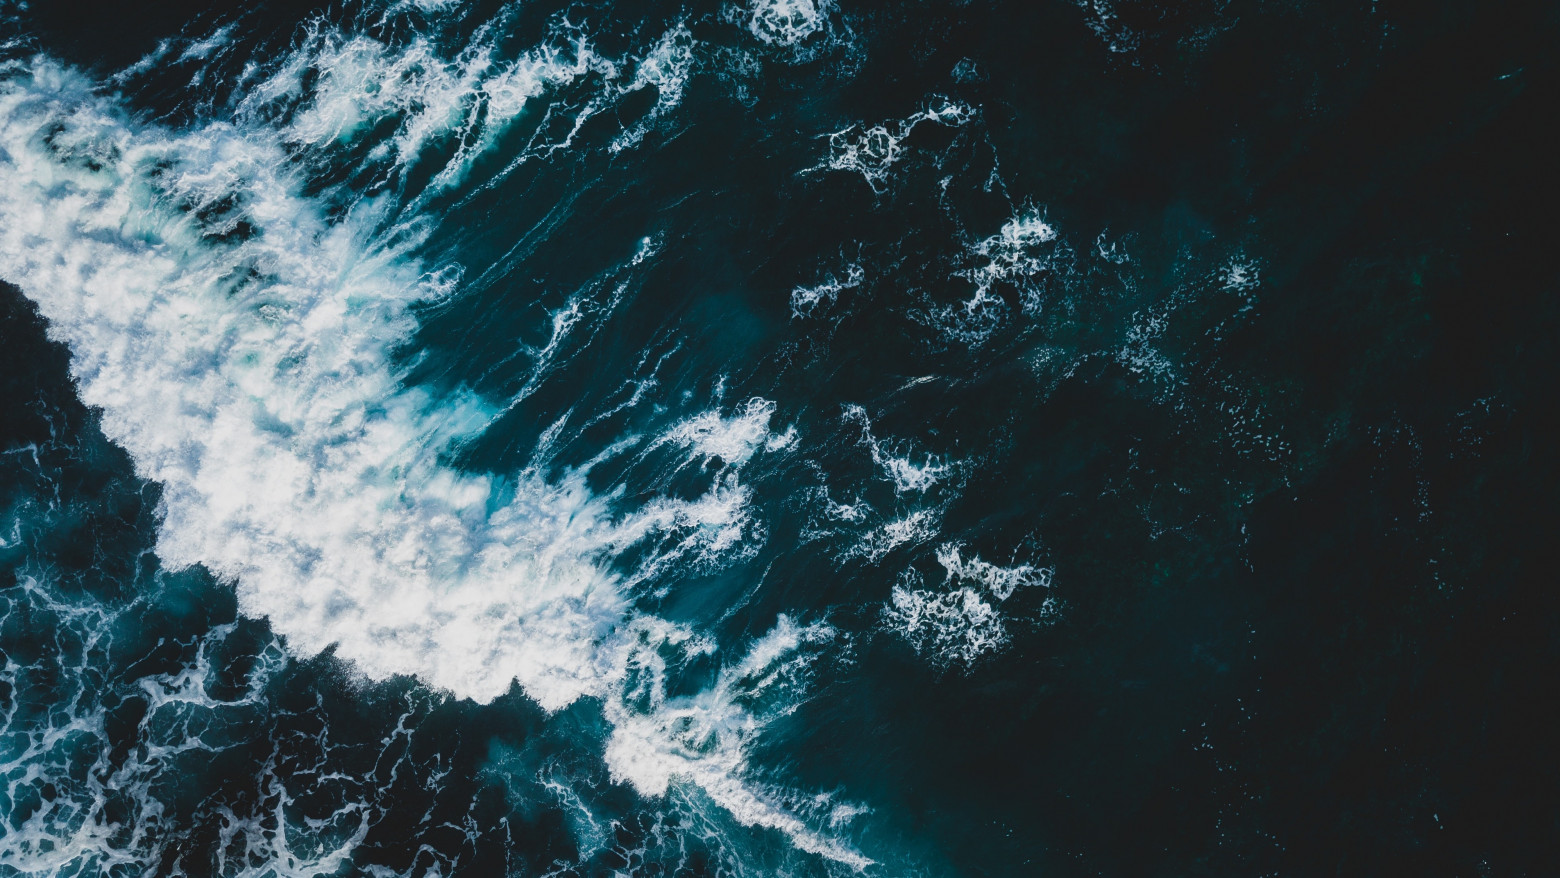 A wave breaks on a dark blue ocean, unleashing a cascade of white foam.